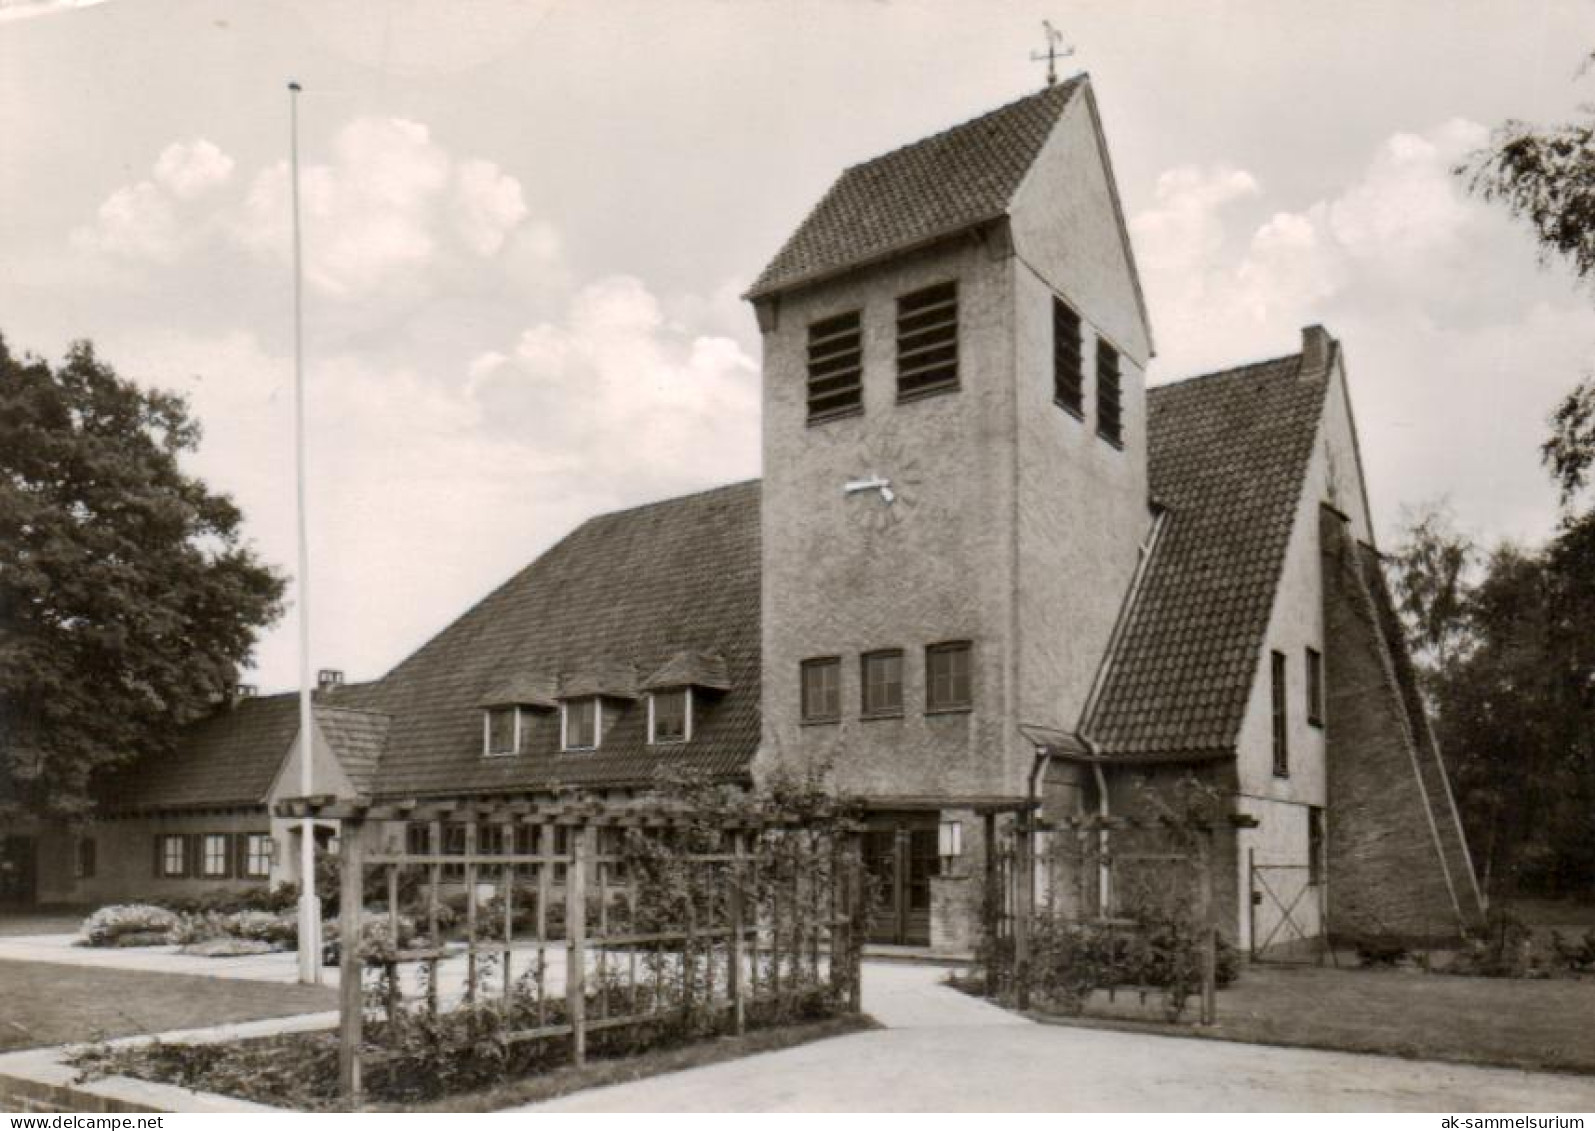 Schenefeld (Kreis Pinneberg) / Stephanskirche (D-A412) - Pinneberg